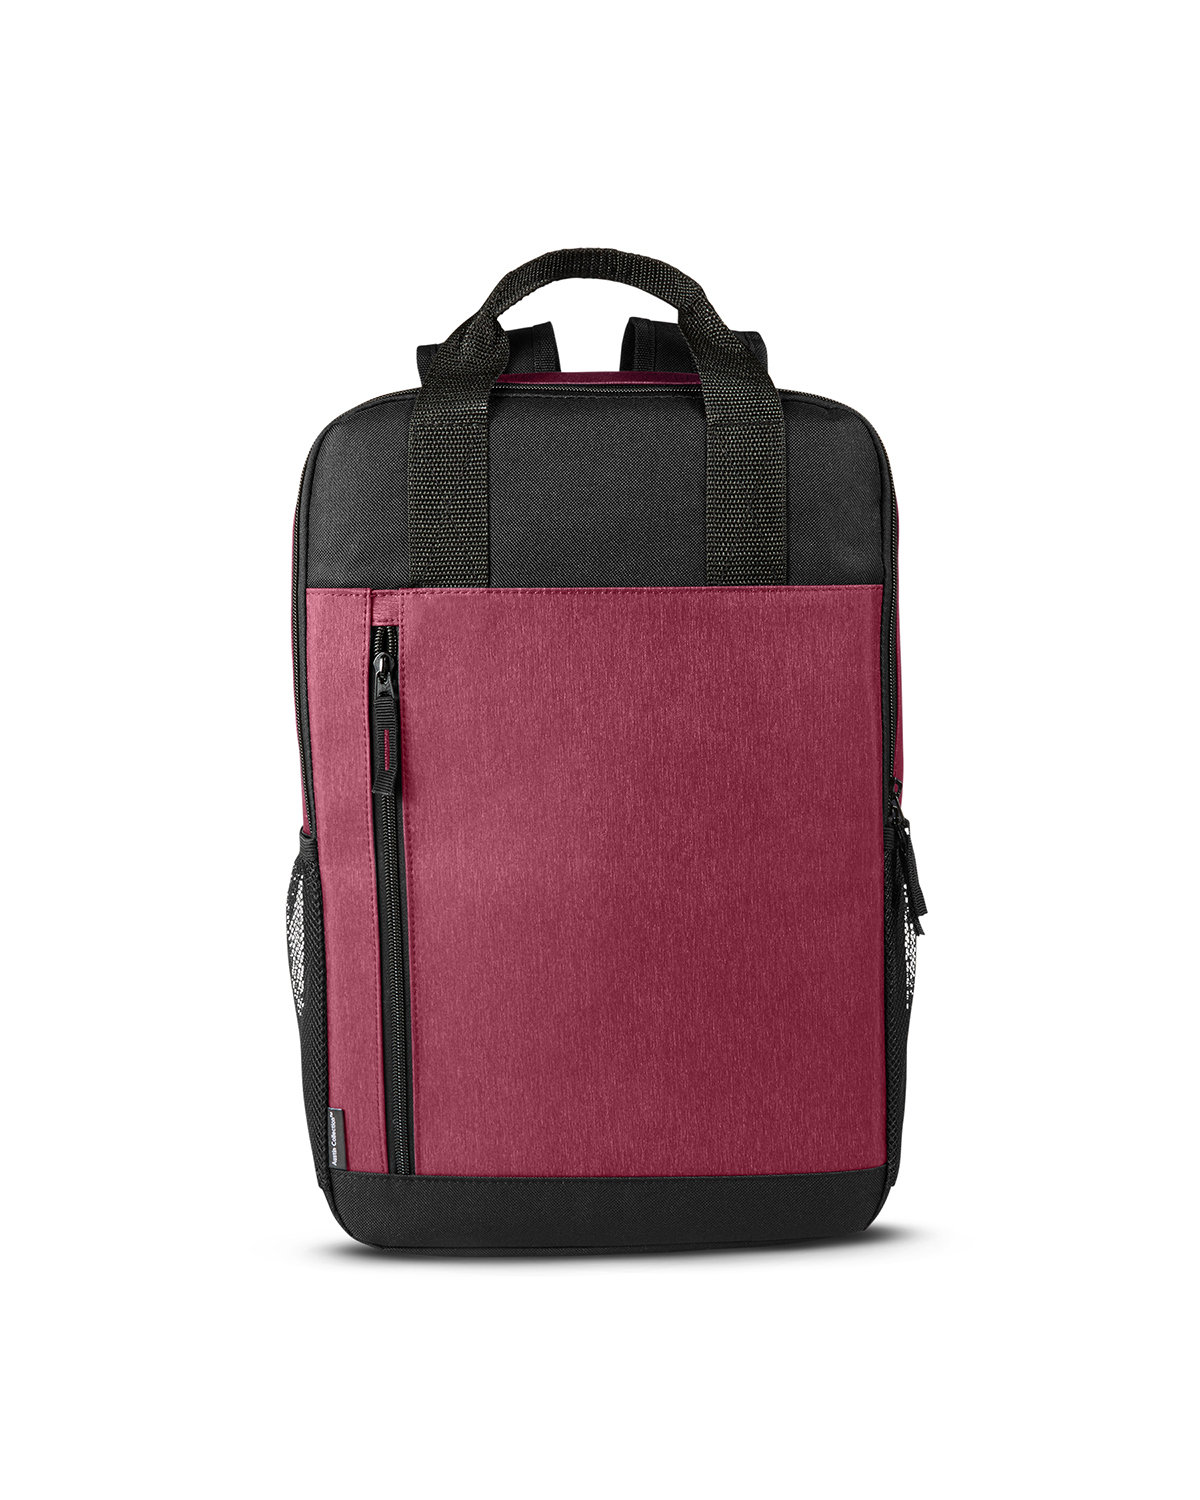 Prime Line BG360 - Austin Nylon Collection Laptop Backpack